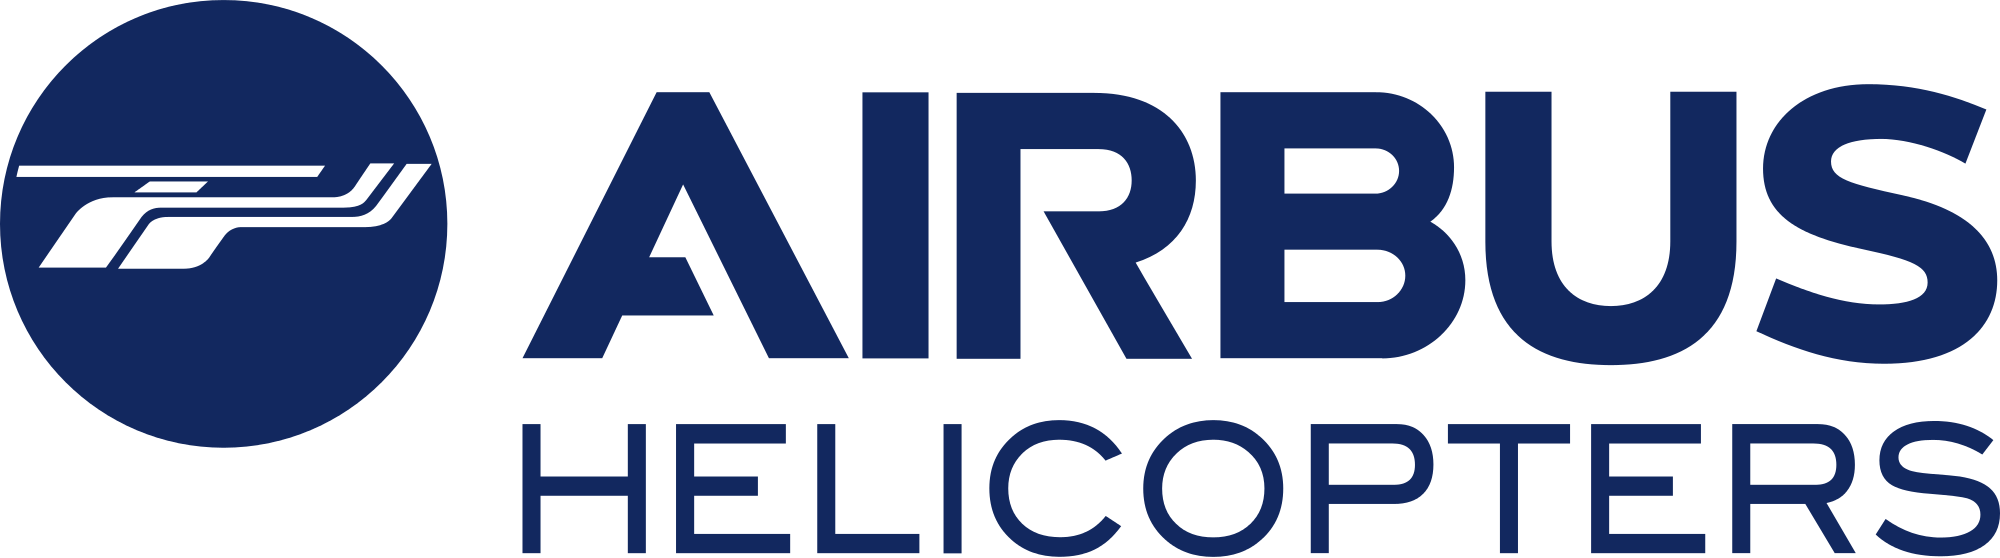 File:Airbus logo 2017.png